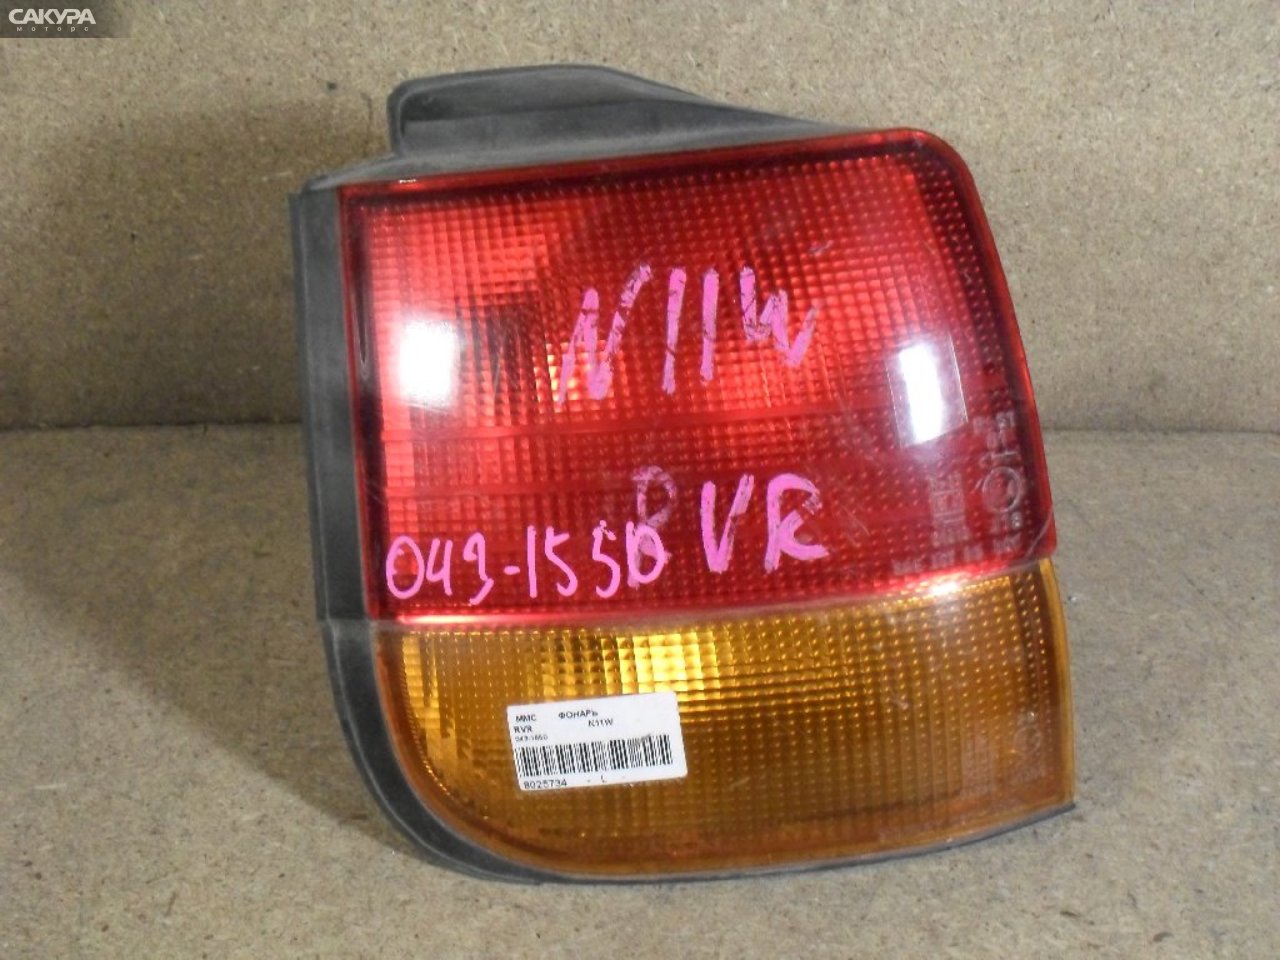 Фонарь стоп-сигнала левый Mitsubishi RVR N11W 043-1550: купить в Сакура Абакан.